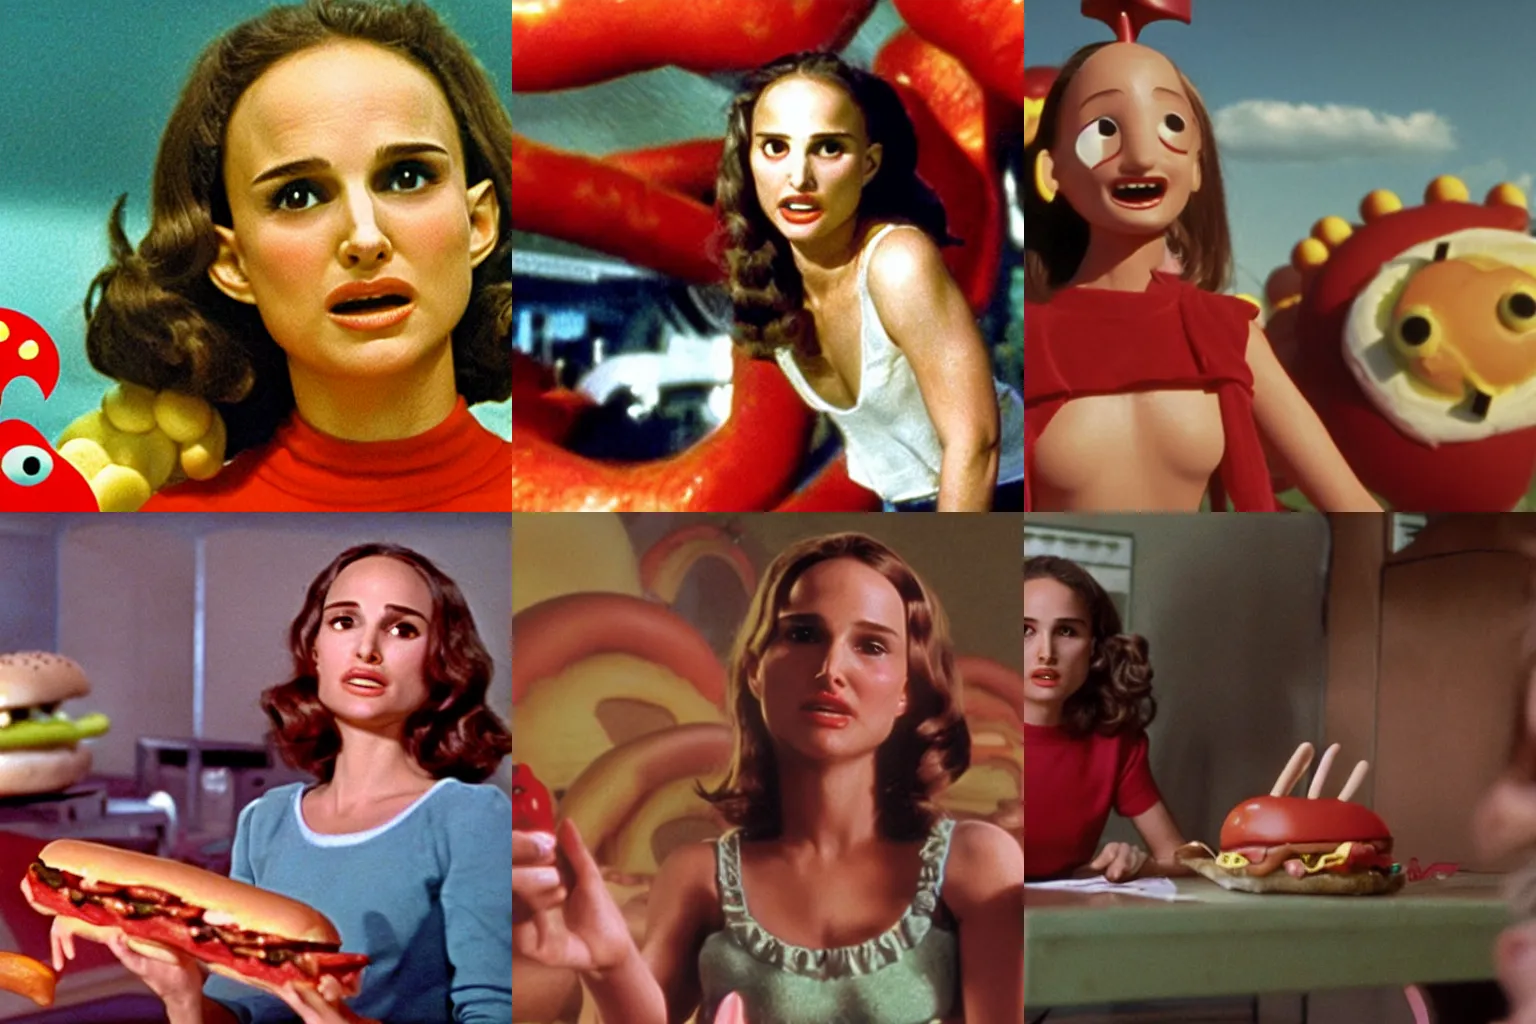 Prompt: Color movie still of Natalie Portman in 'Hot Dog monster vs Hamburger monster' by Ray Harryhausen